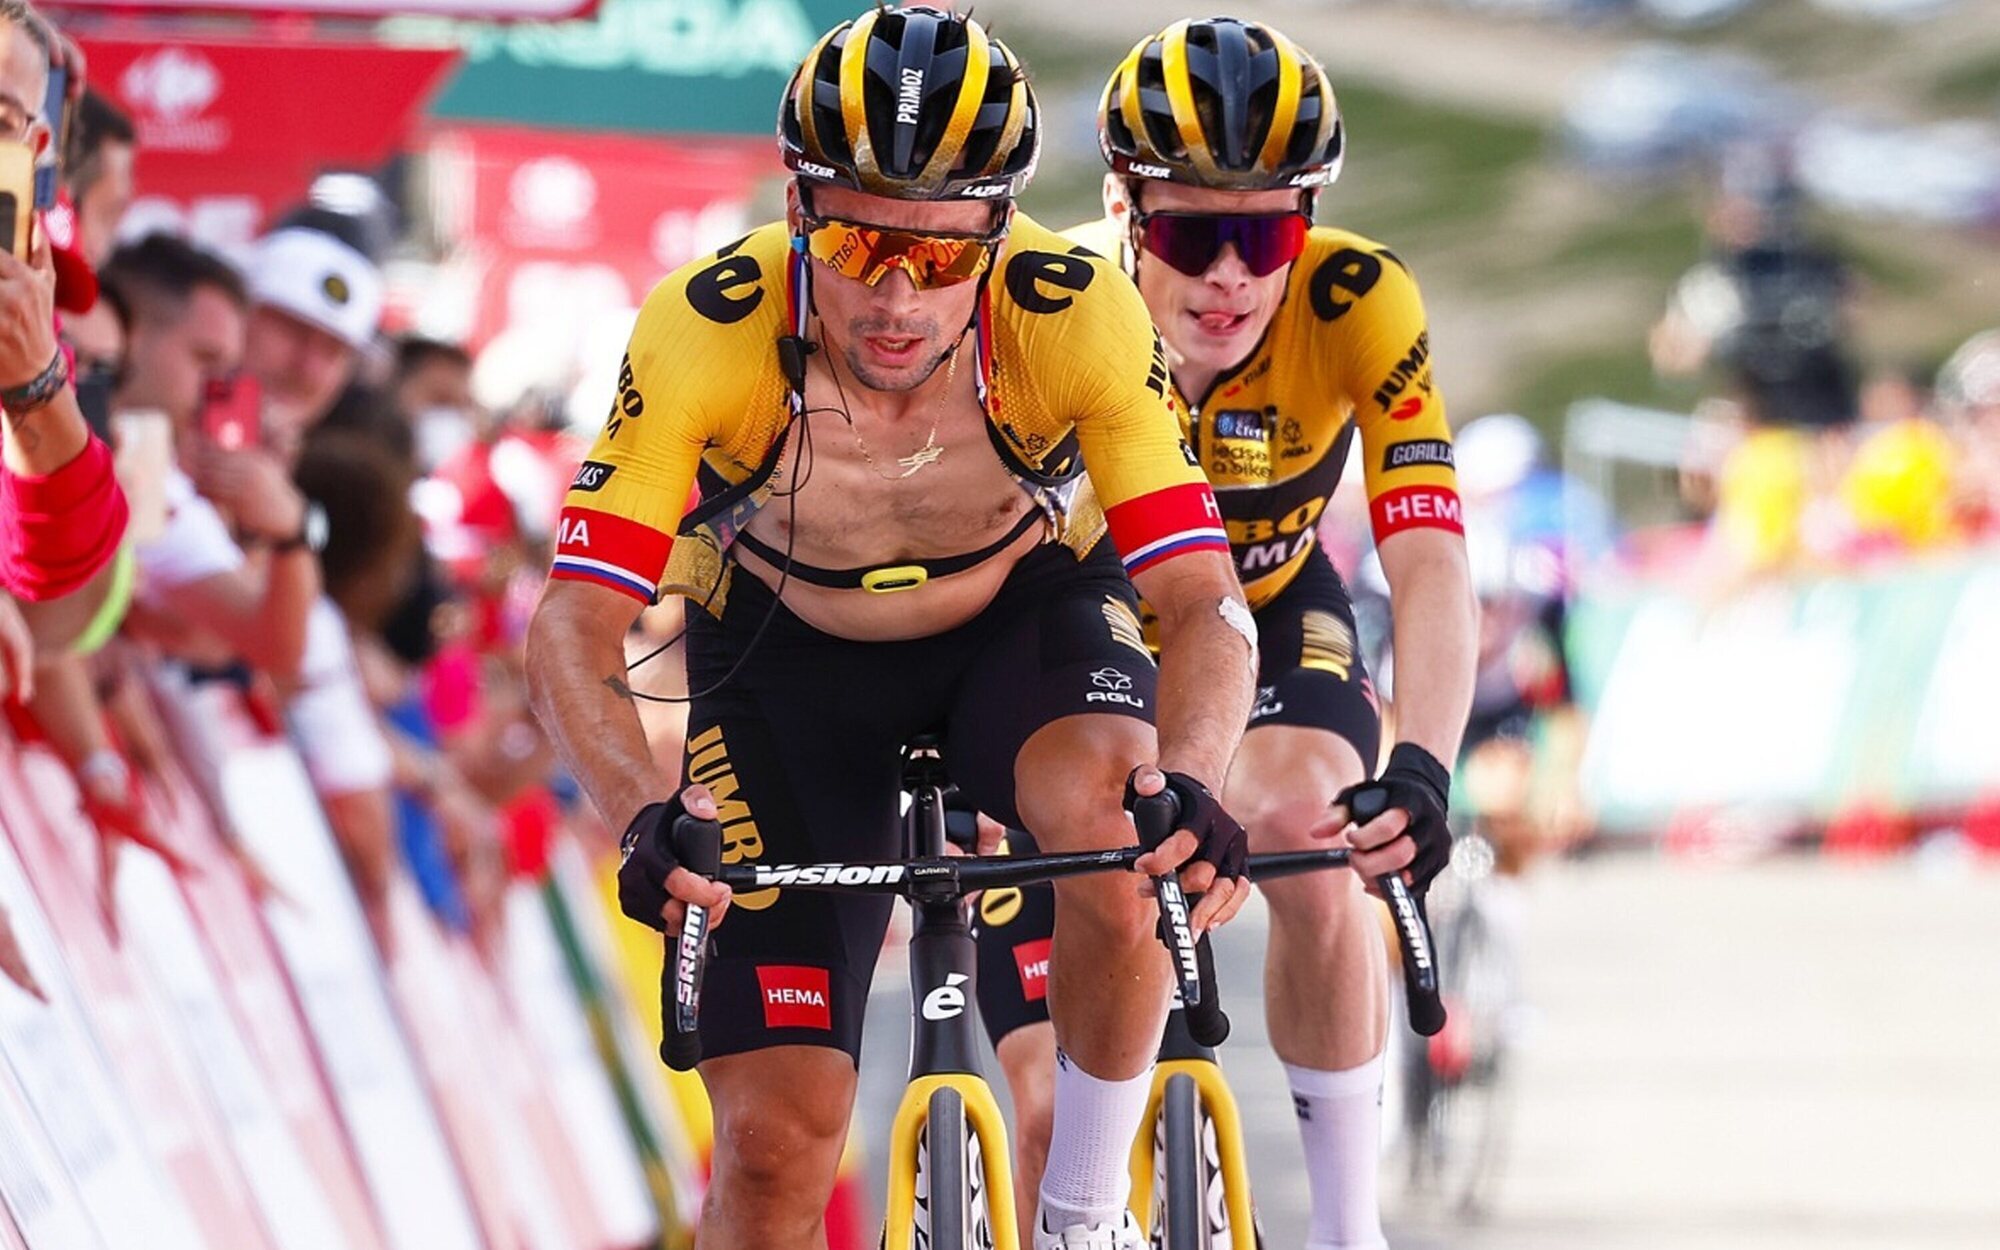 La Vuelta a España pedalea hasta lo más alto del top 10 y roza los 400.000 espectadores